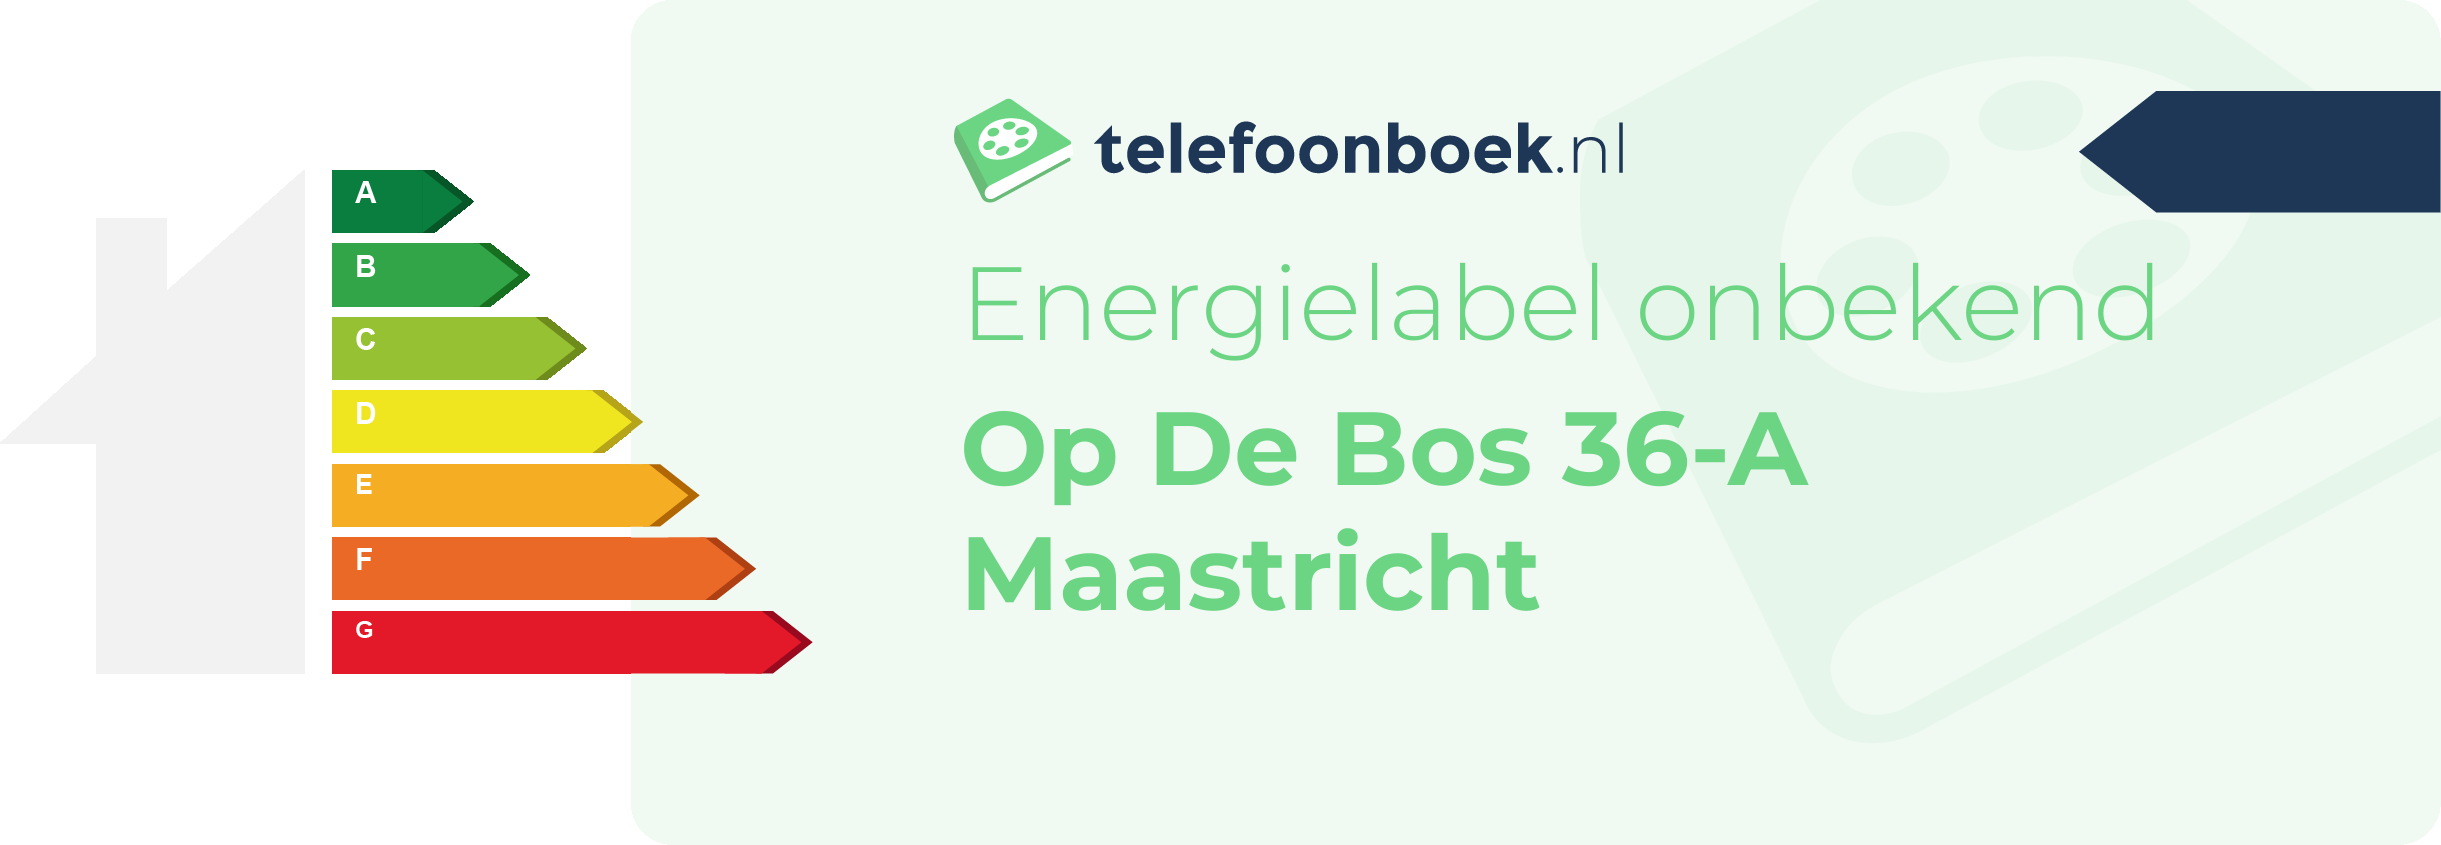 Energielabel Op De Bos 36-A Maastricht